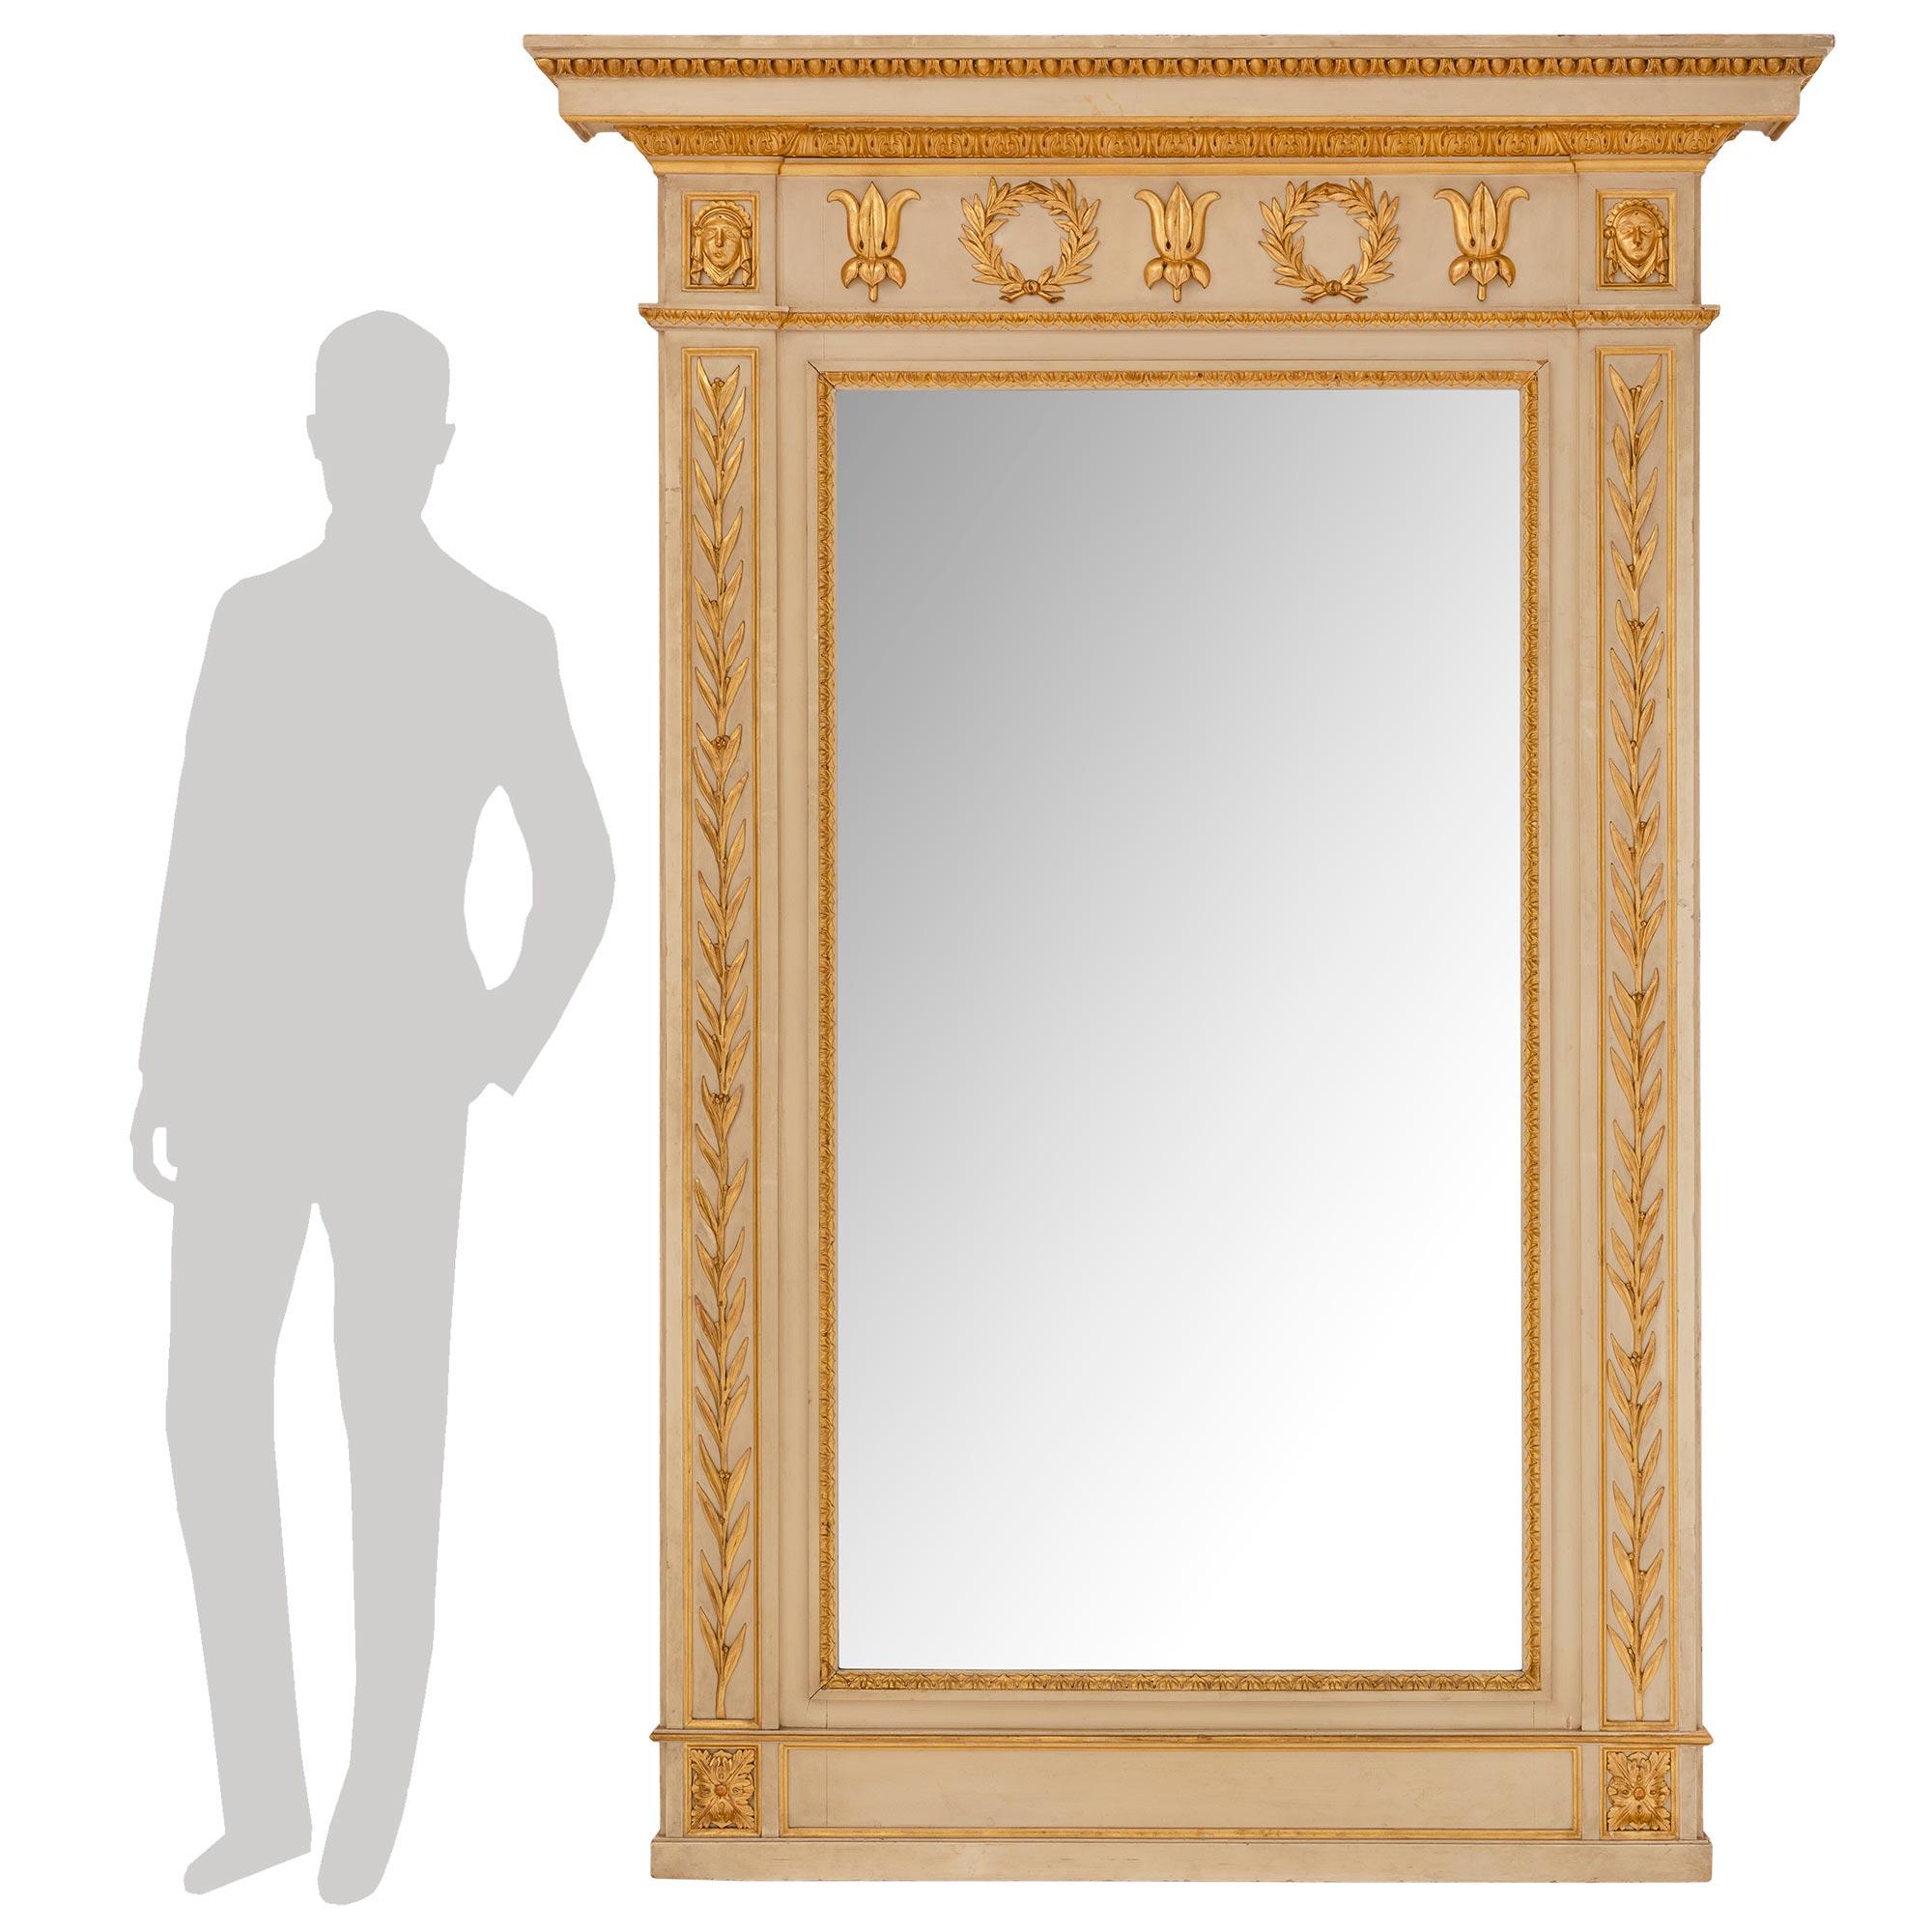 Magnifique miroir néoclassique italien du XIXe siècle en bois patiné et doré. La plaque de miroir d'origine est enchâssée dans une magnifique bordure en bois doré et feuillagé. De belles branches de laurier s'étendent de chaque côté du cadre patiné